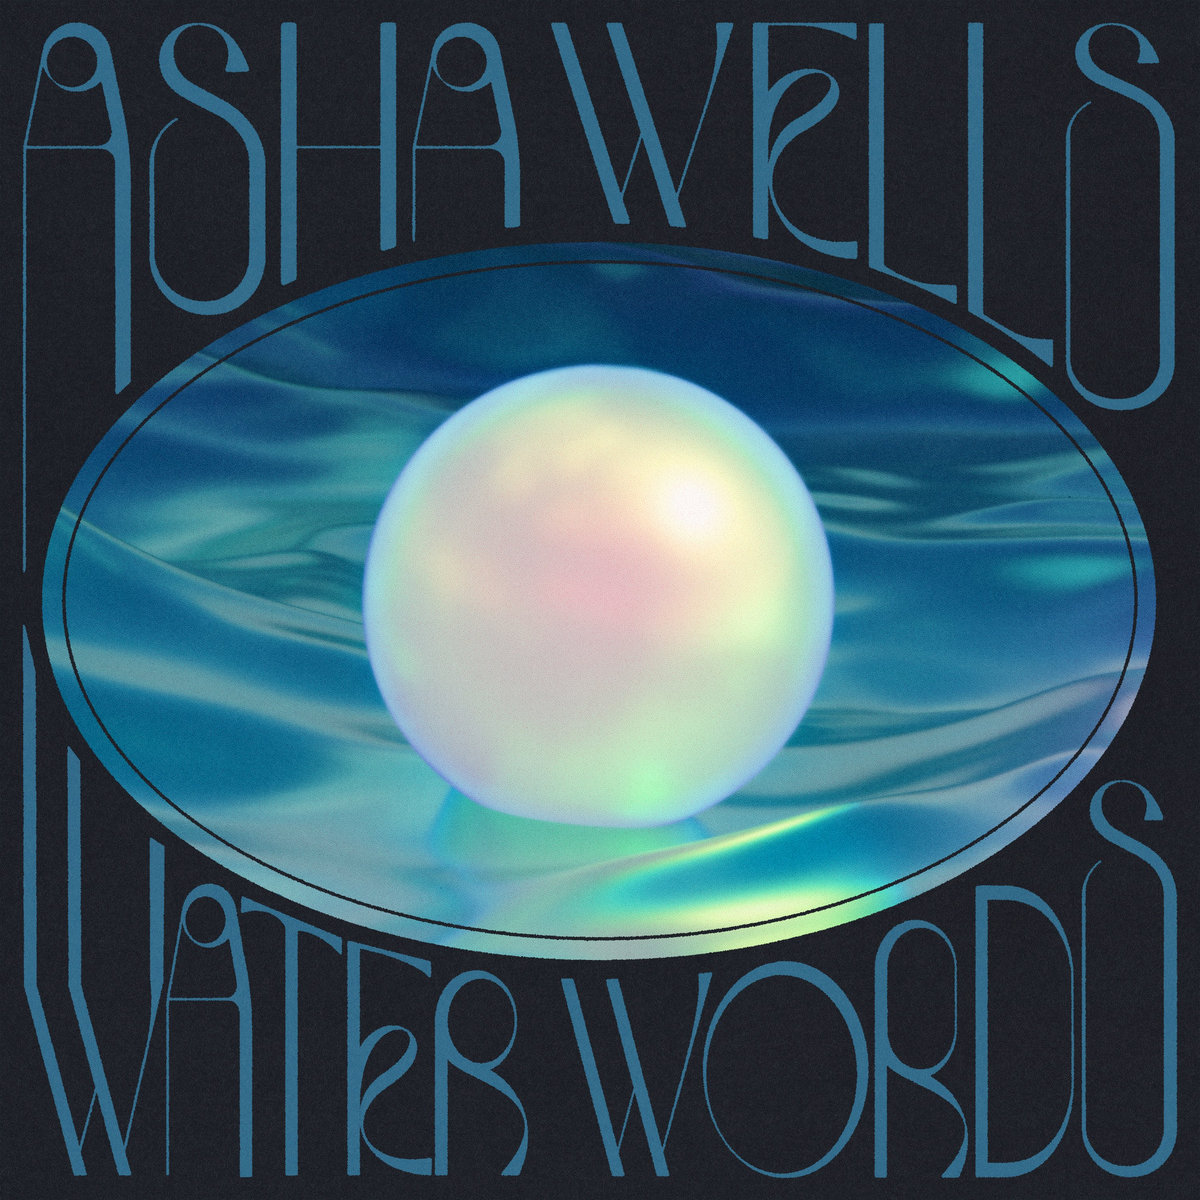 asha wells water words album art